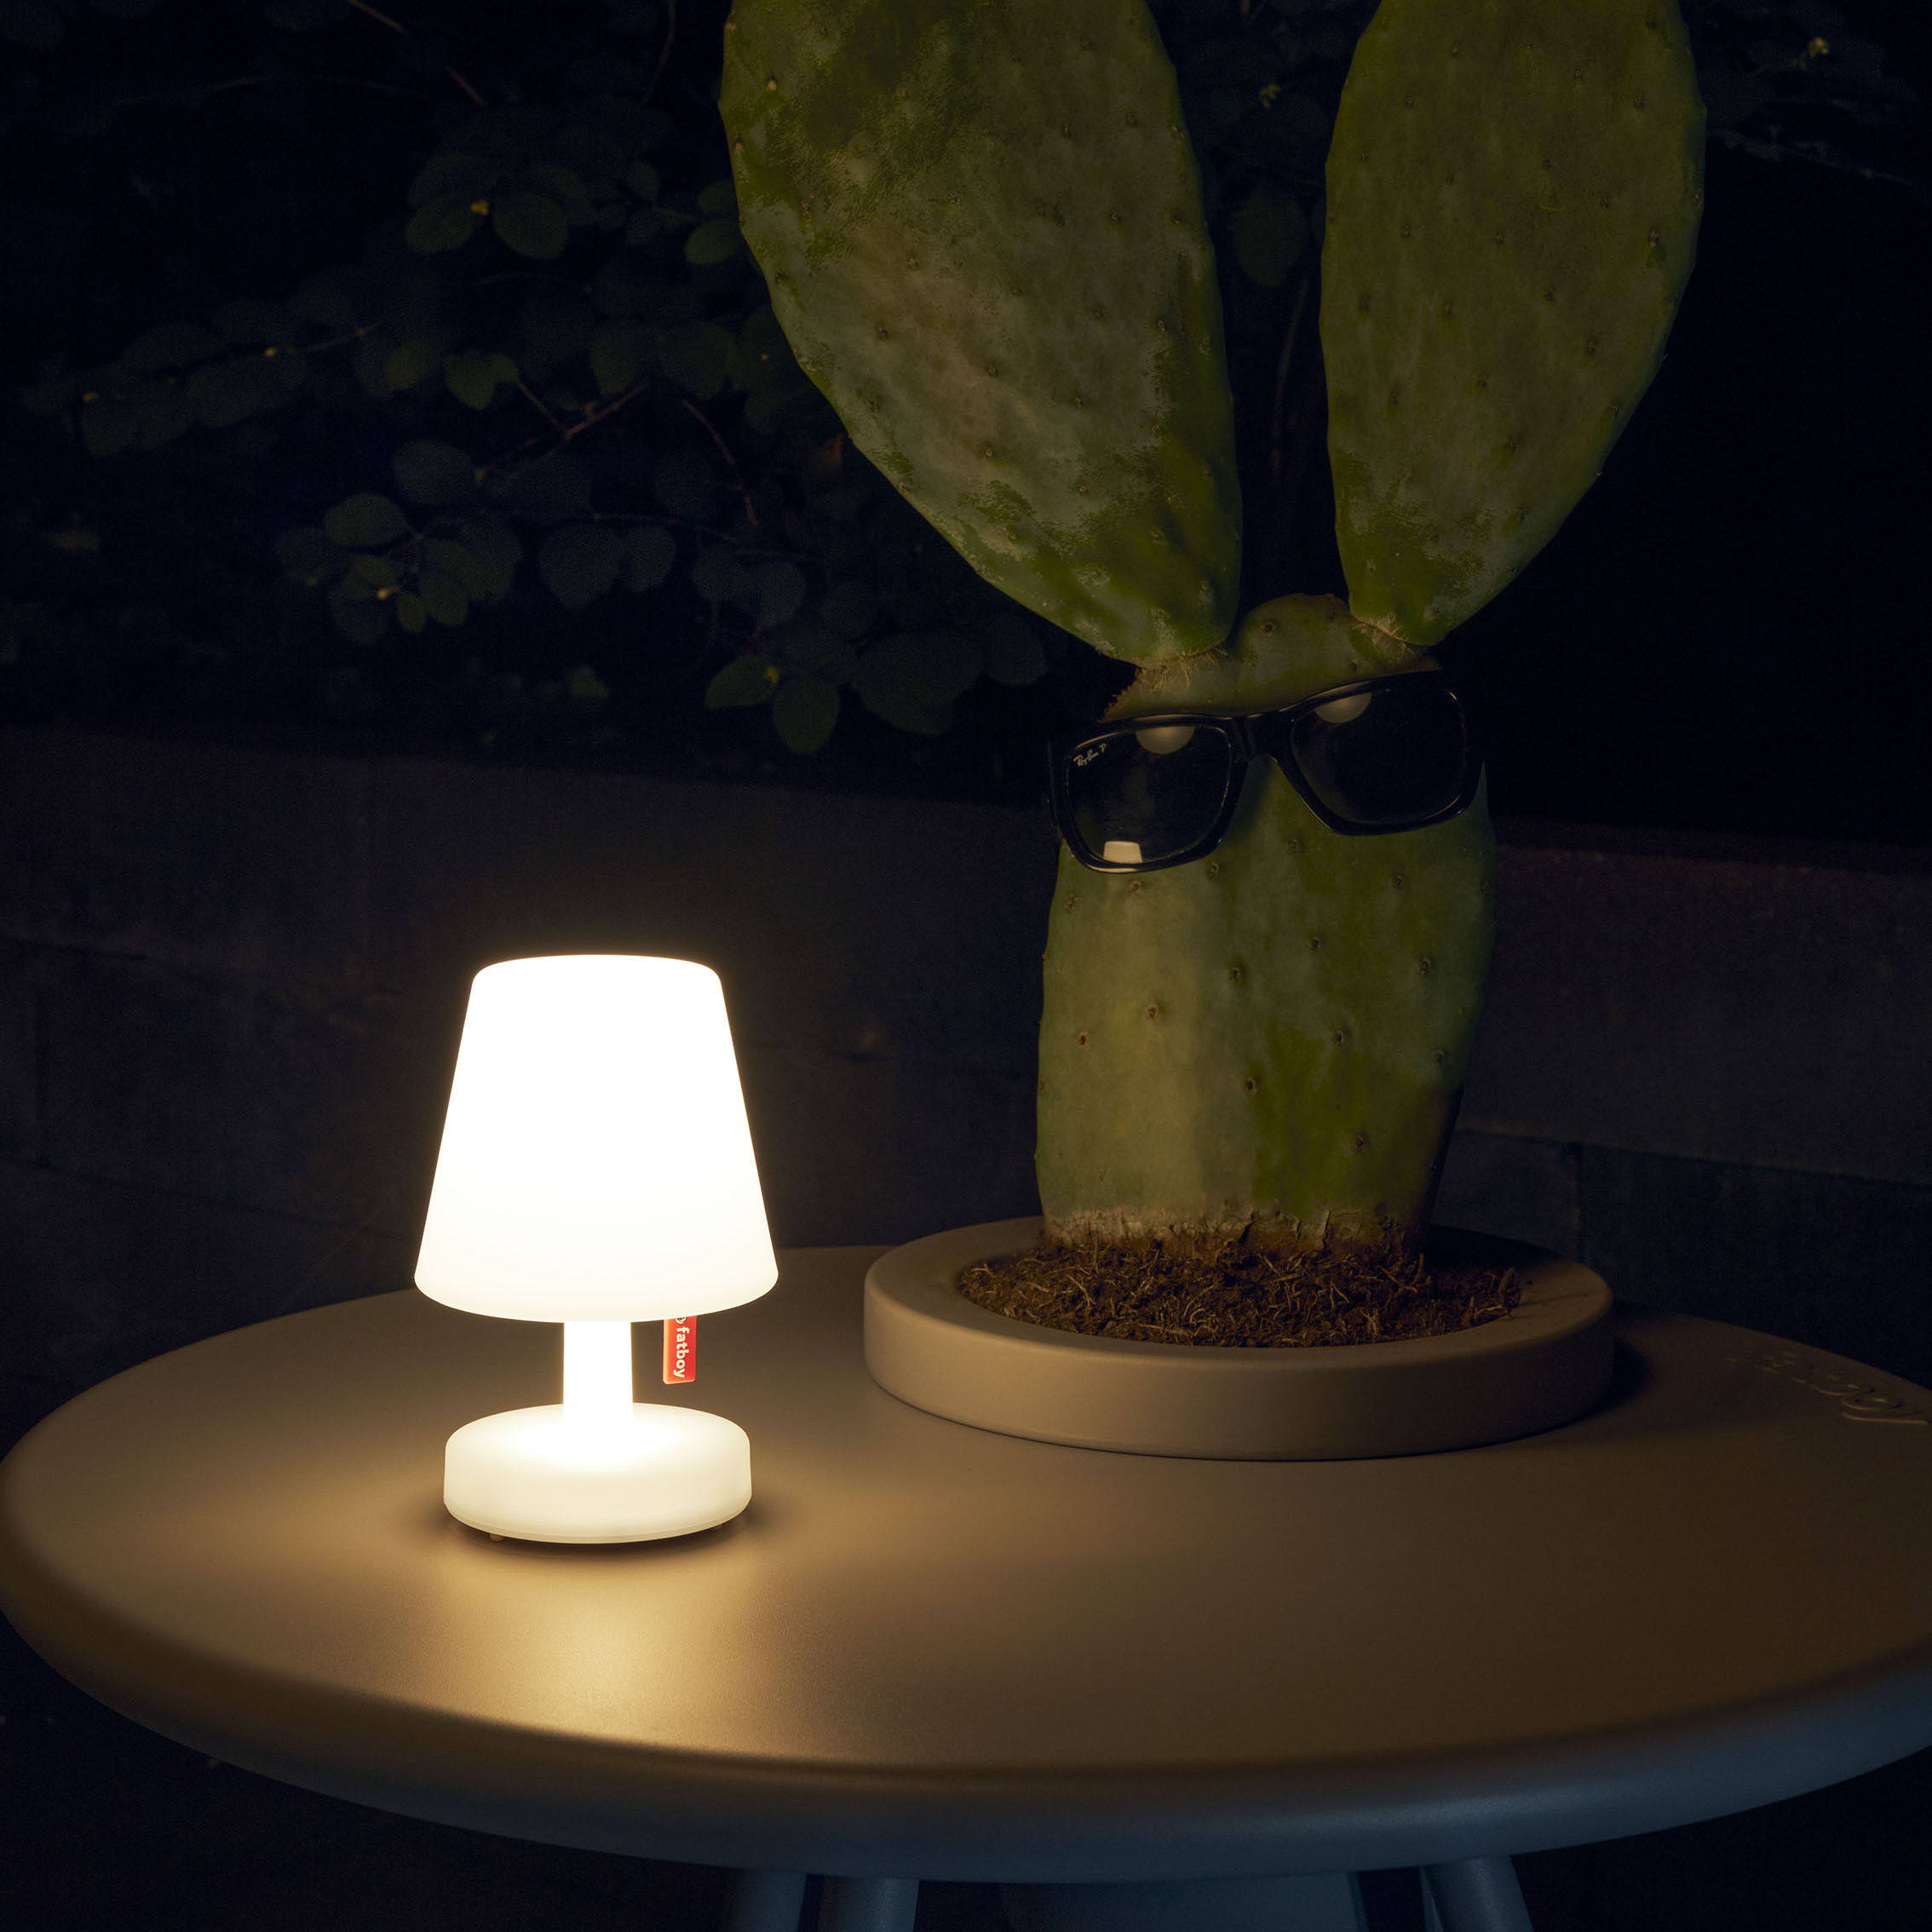 Edison The Mini lot de 3 lampes sans fil rechargeable - Margène Maroquinerie